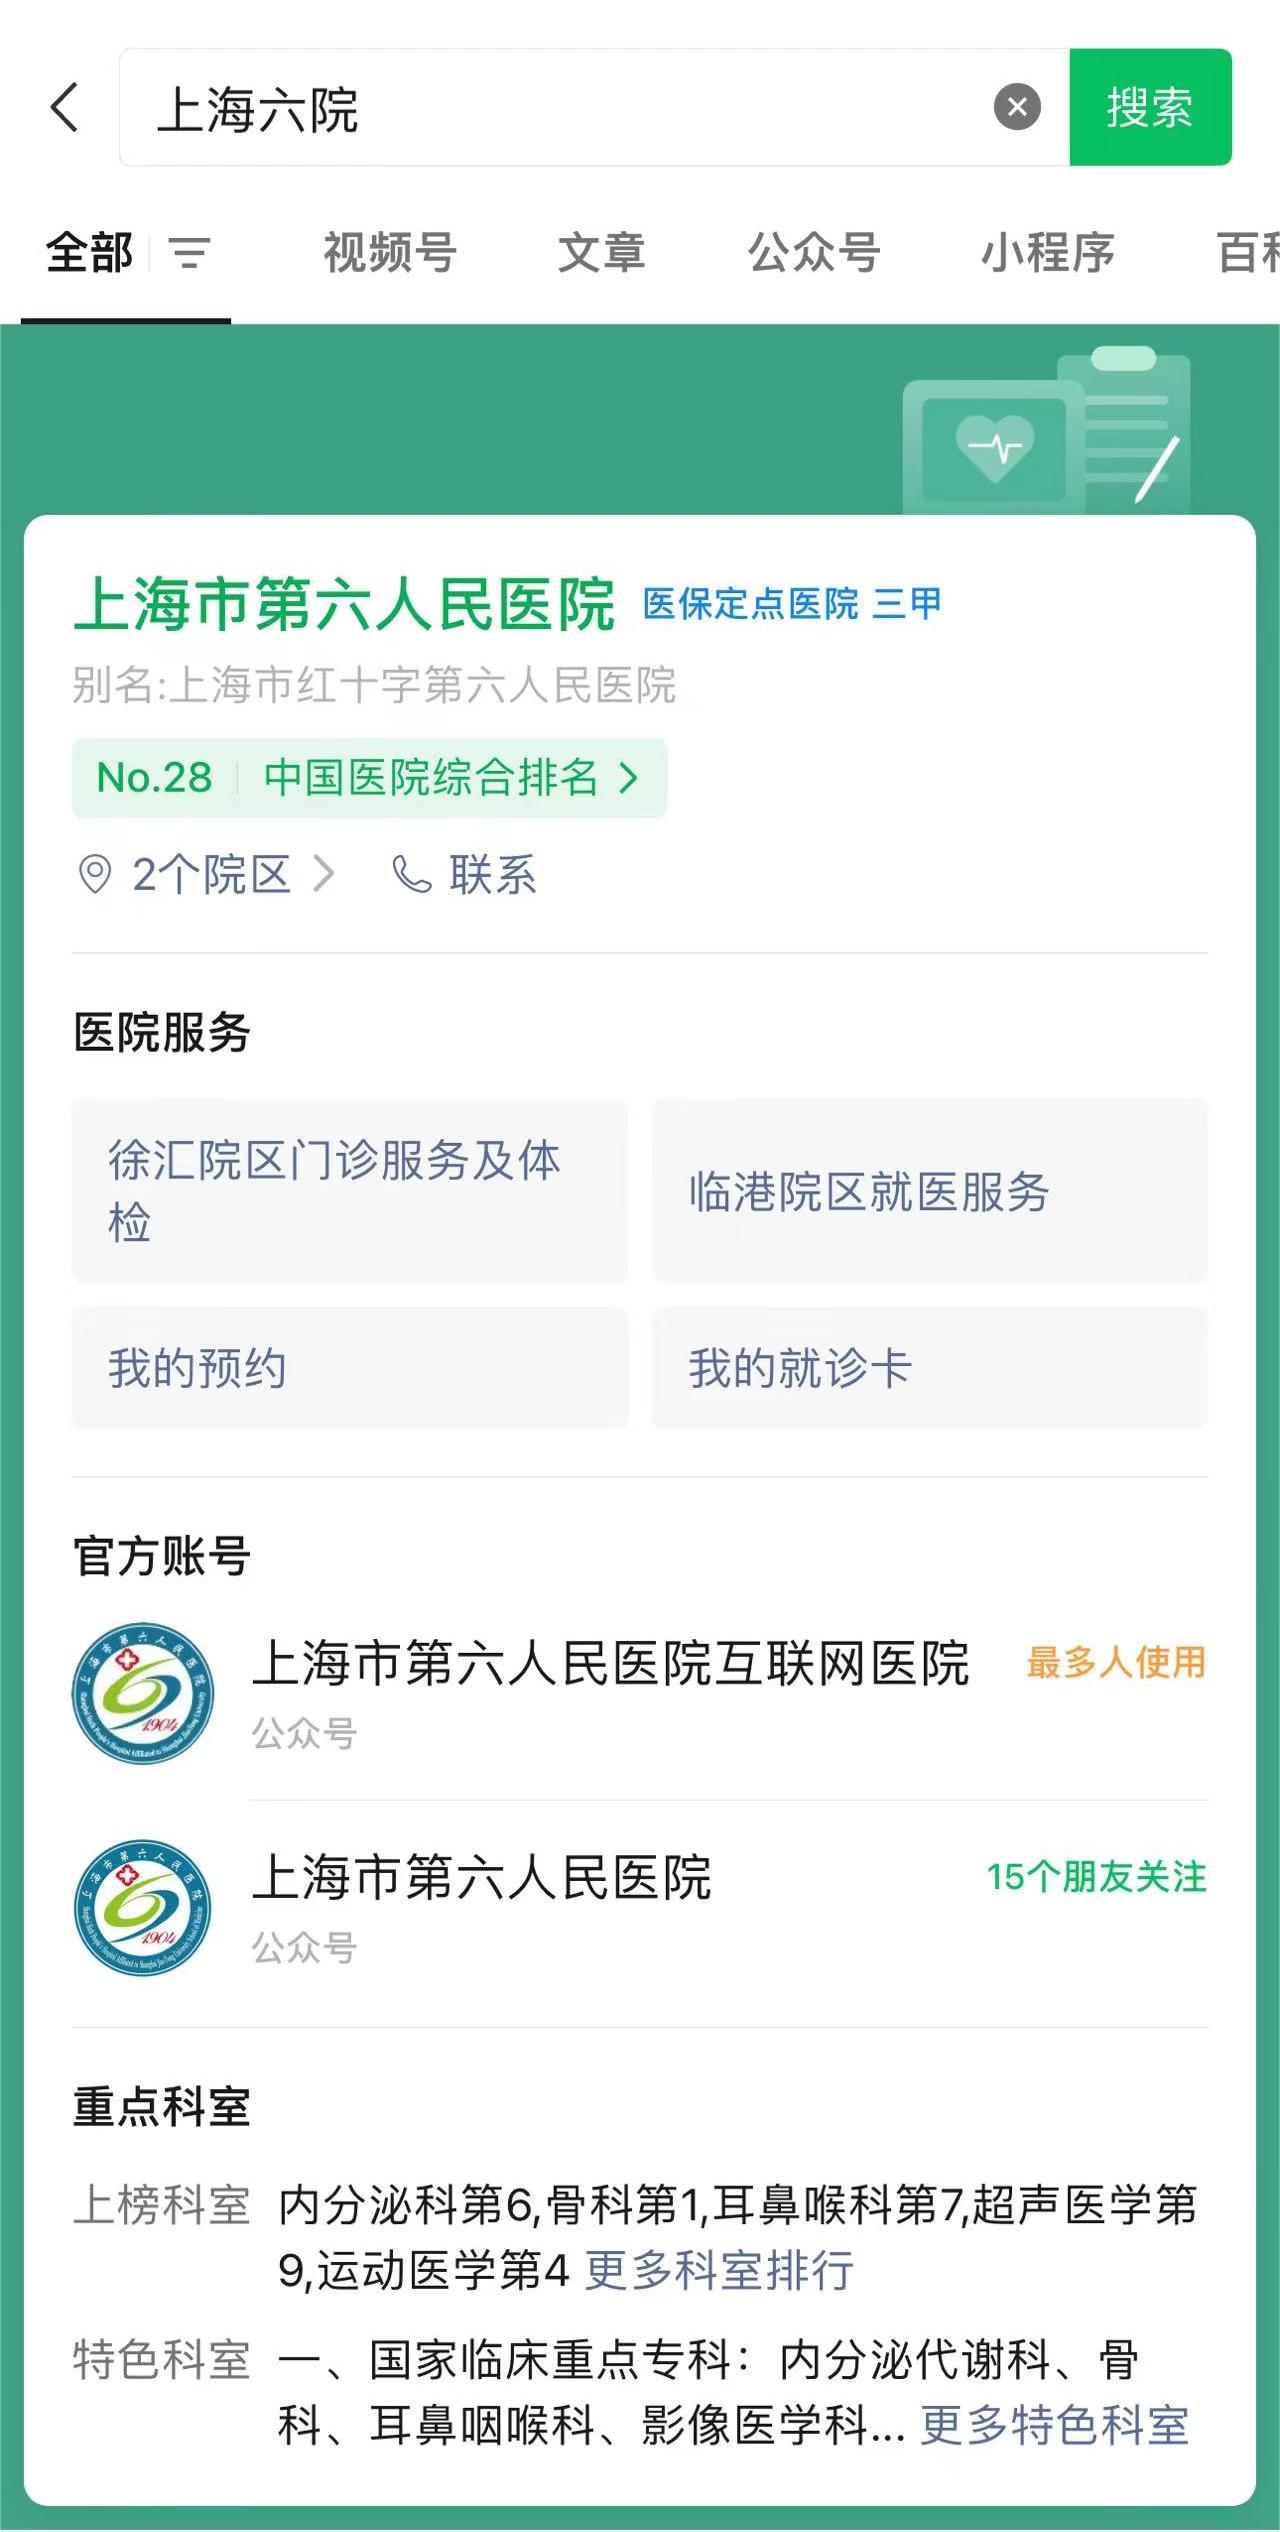 上海市第六人民医院预约流程